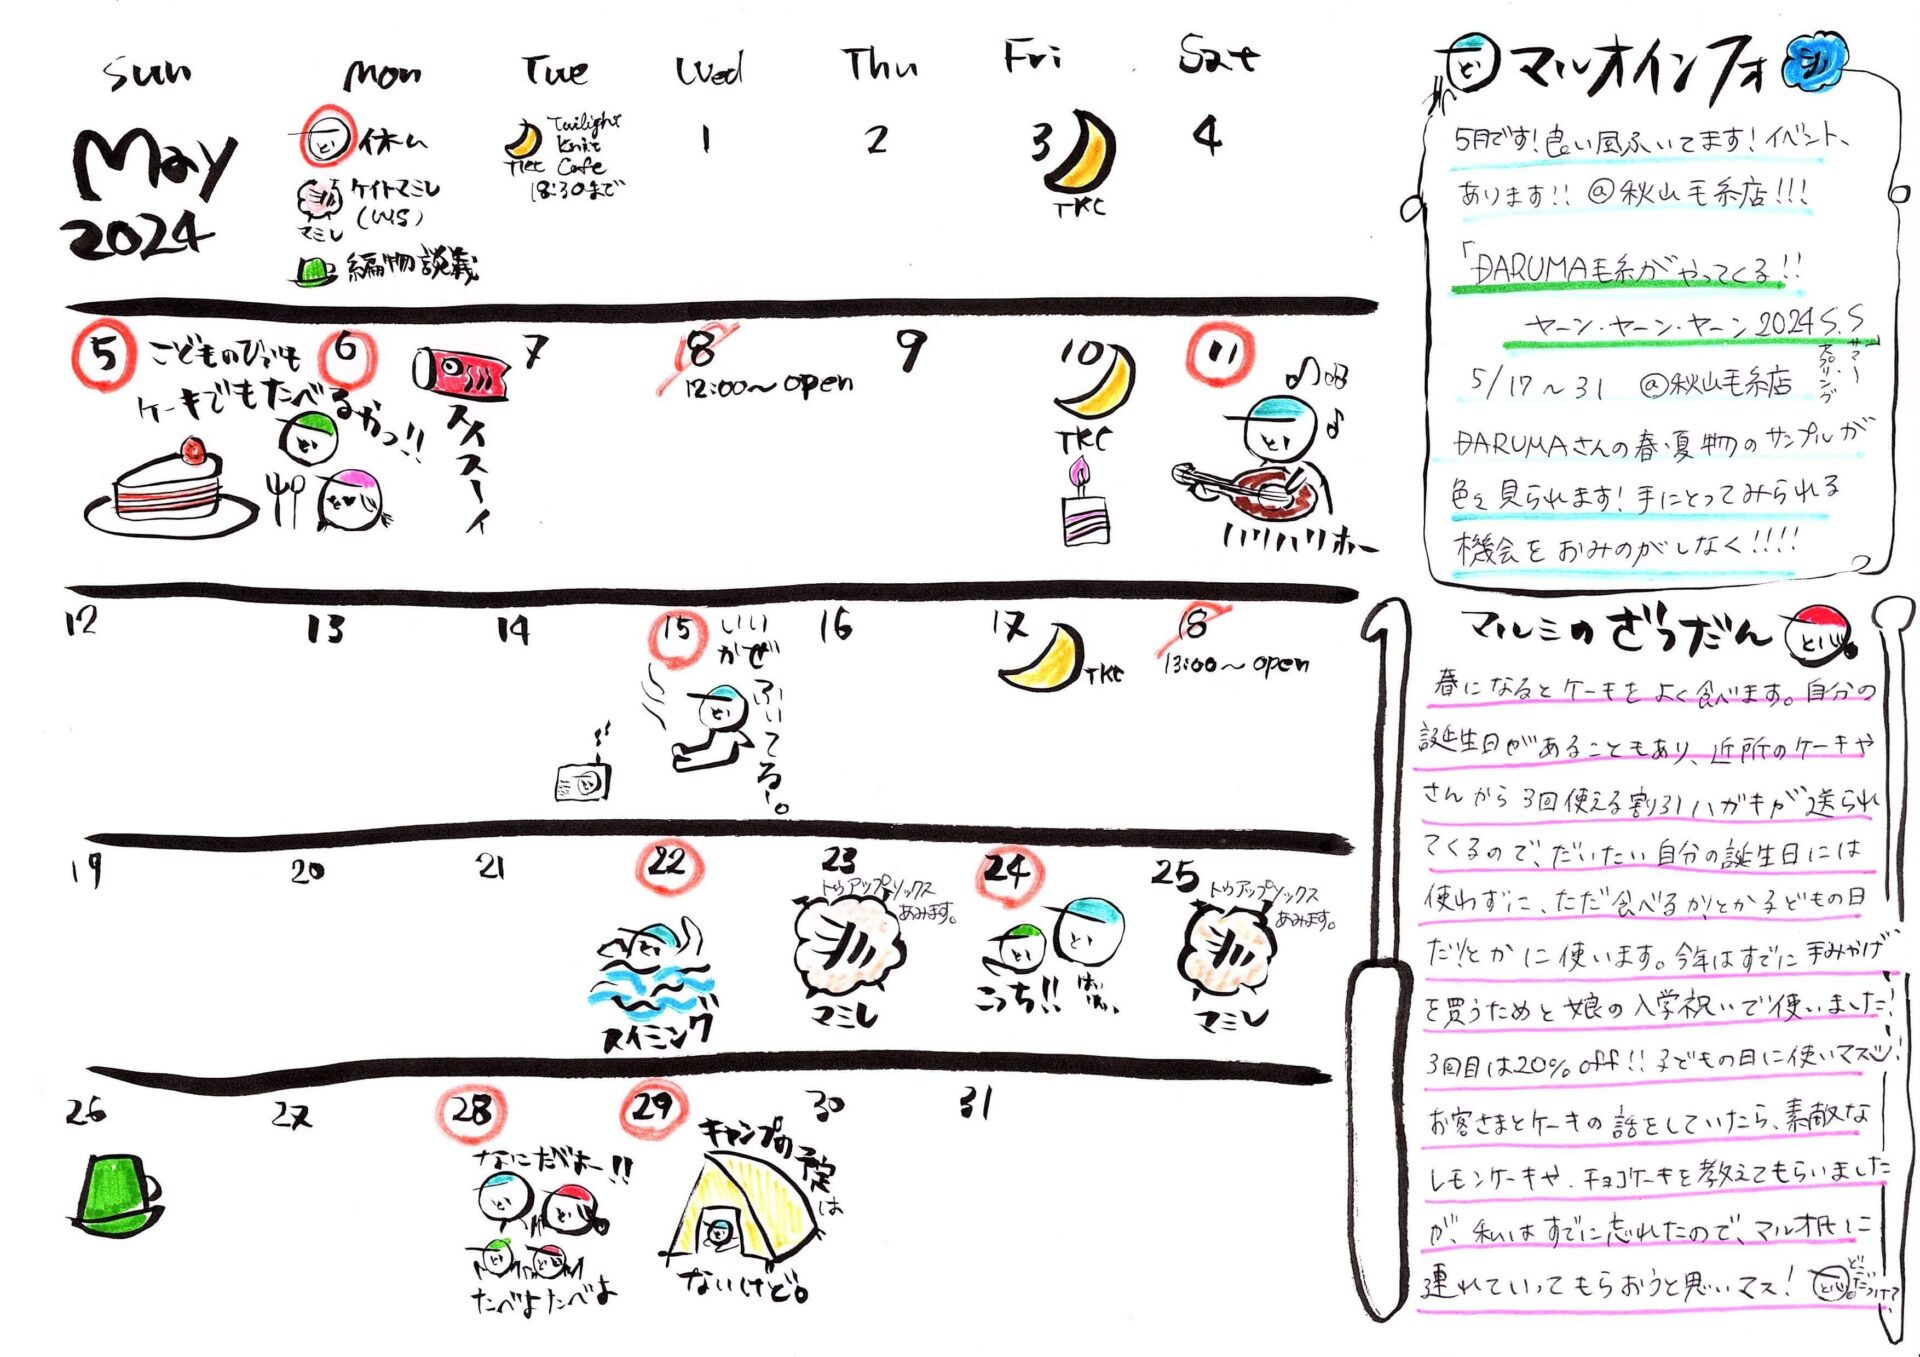 秋山毛糸店、今月のカレンダー